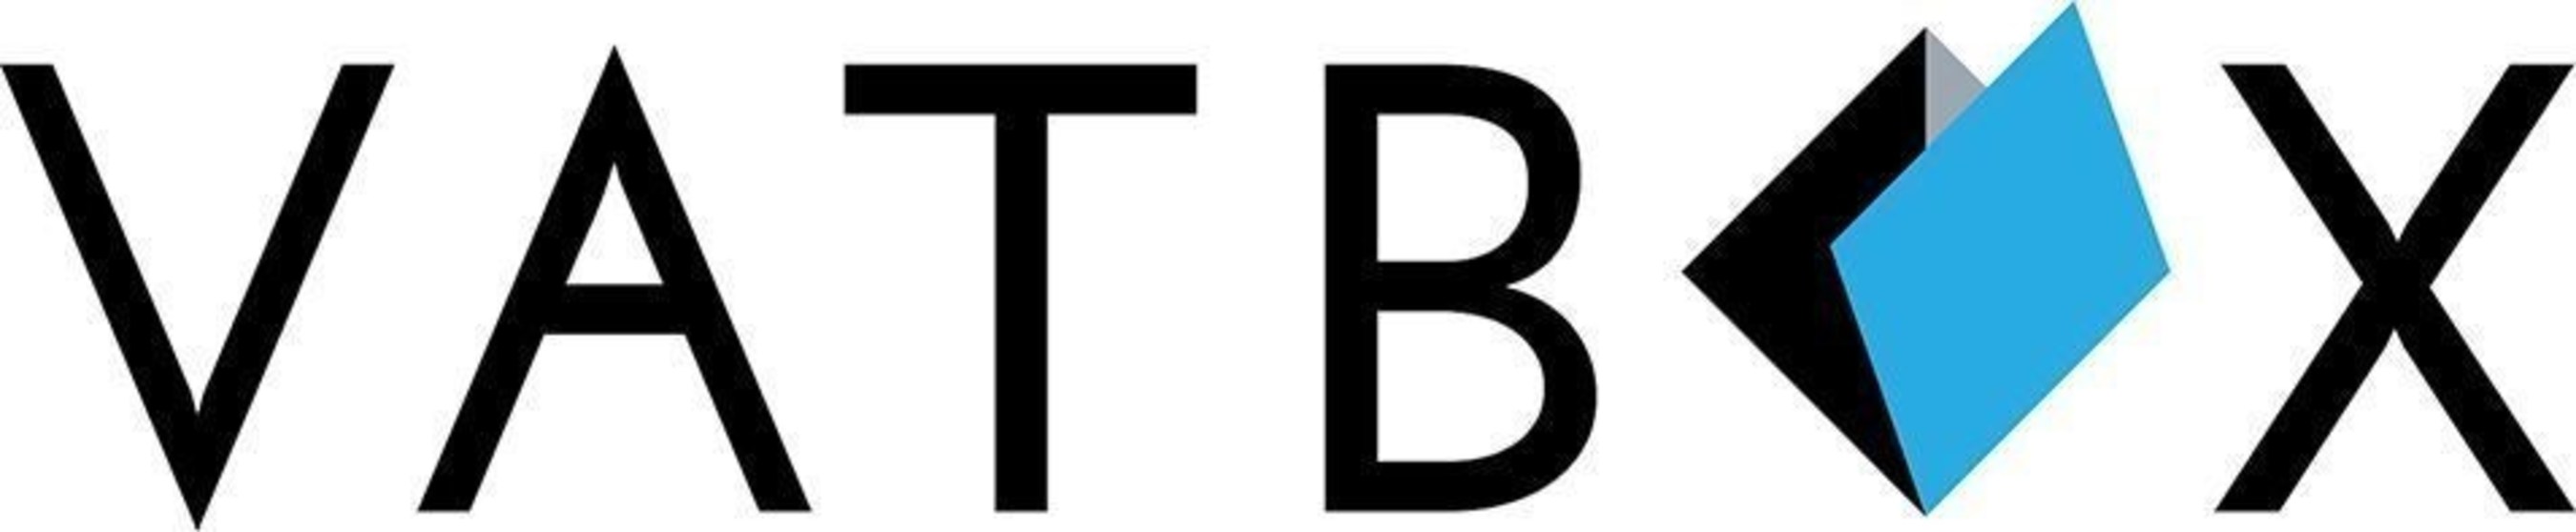 VATBox logo (PRNewsFoto/VATBox) (PRNewsFoto/VATBox)